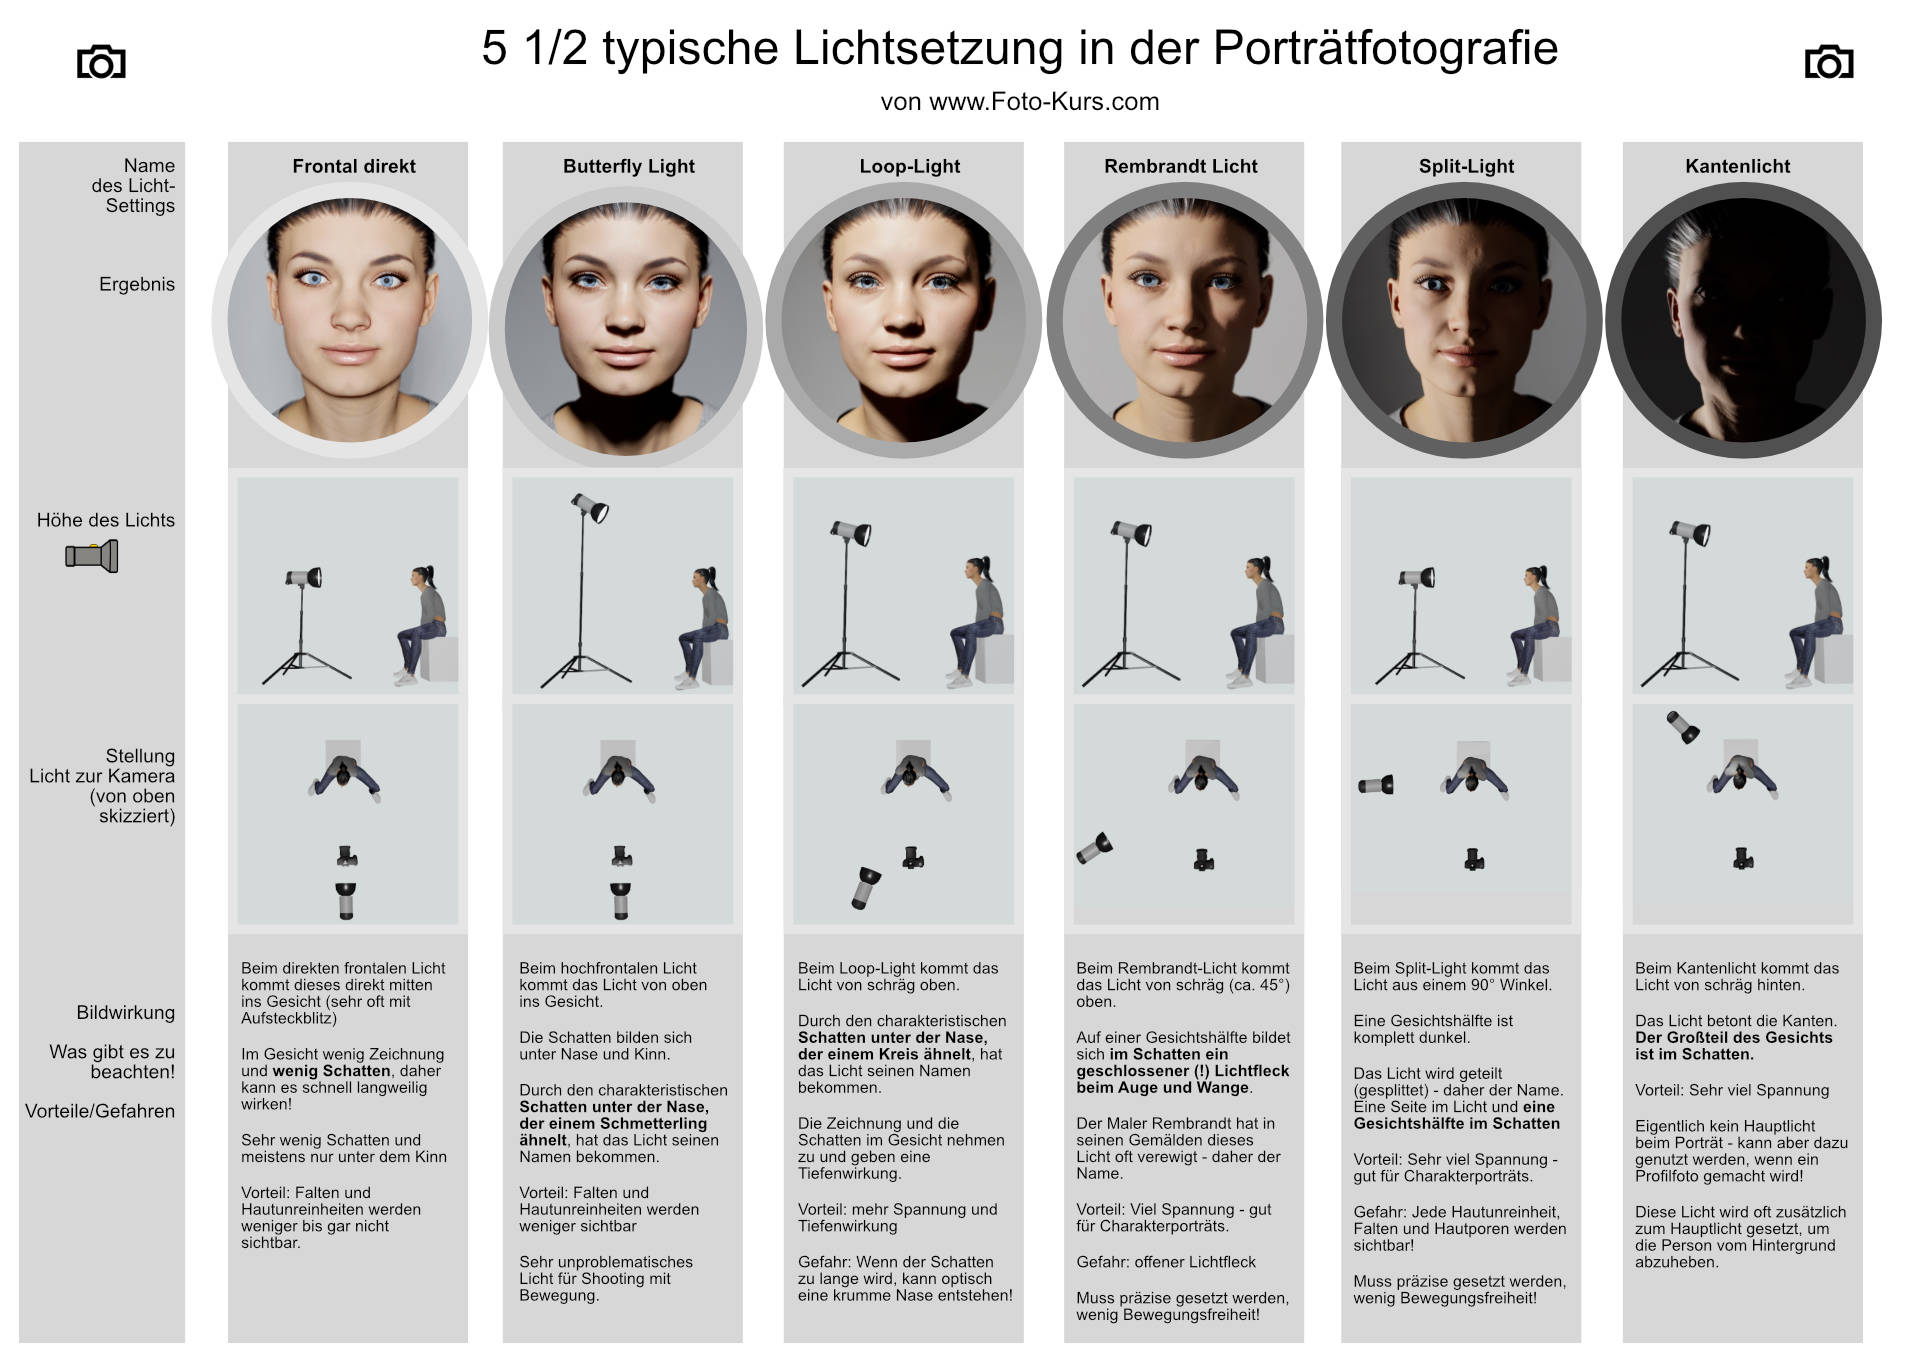 Übersicht über die typischen Licht-Setups der Portraitfotografie – Aufbau und Wirkung